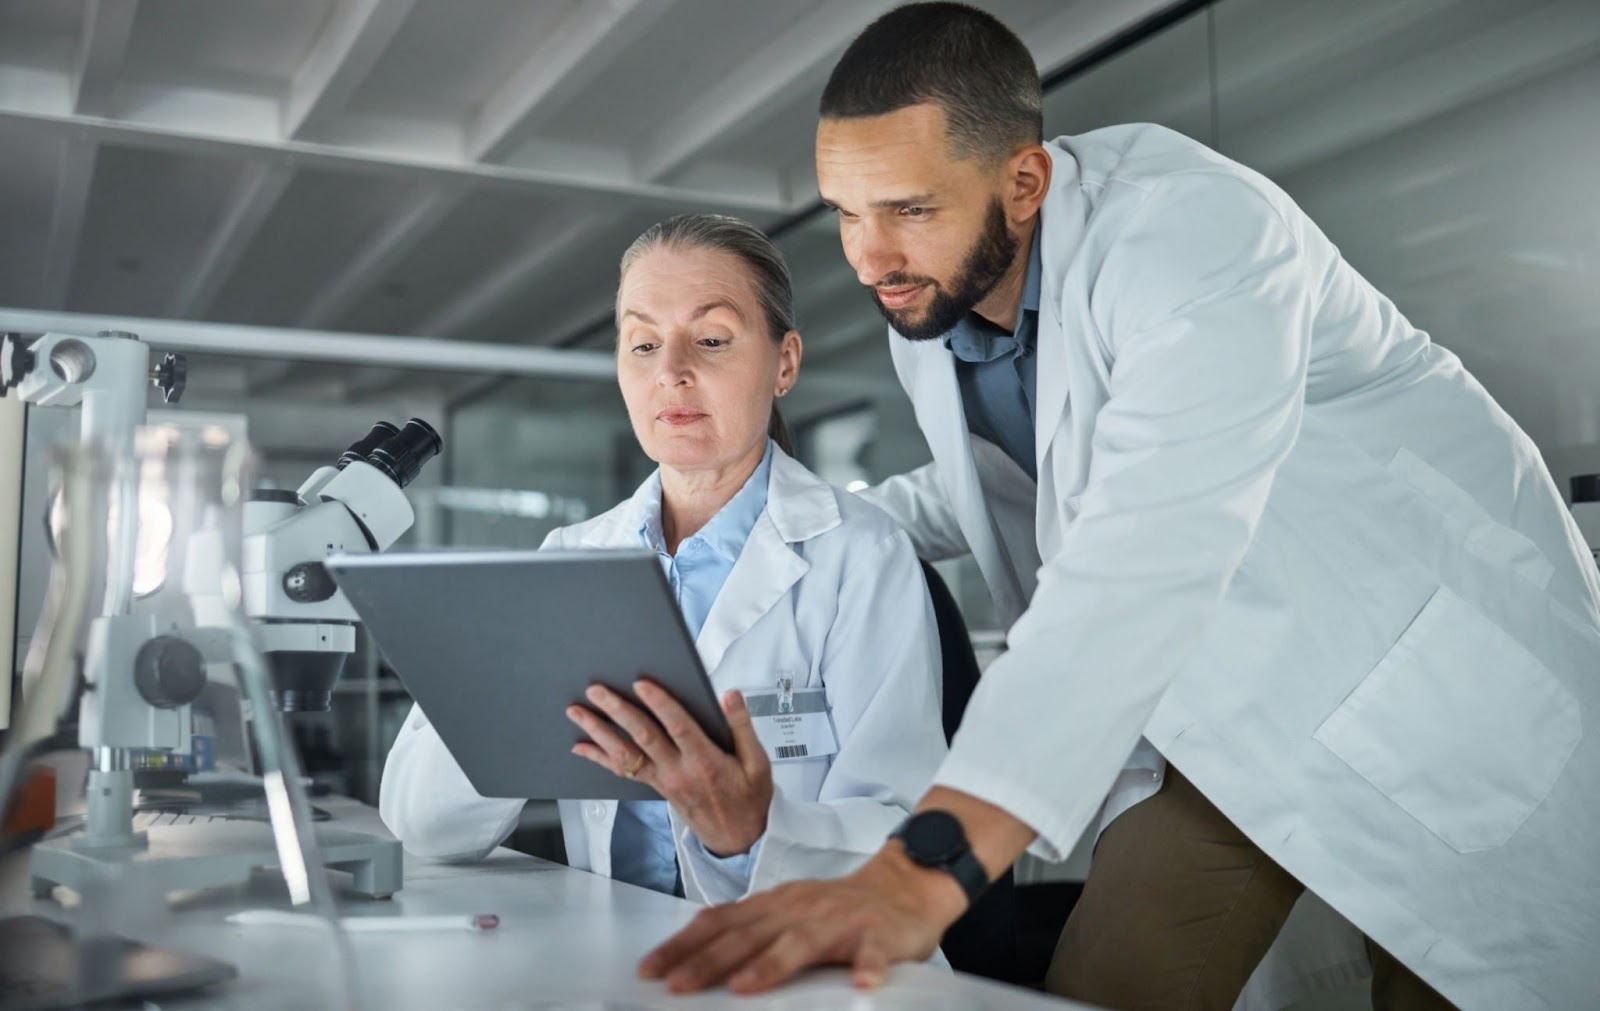 Uma cientista mulher ao lado de outro cientista homem, ambos estão olhando o tablet que está na mão da cientista, ao fundo está o laboratório